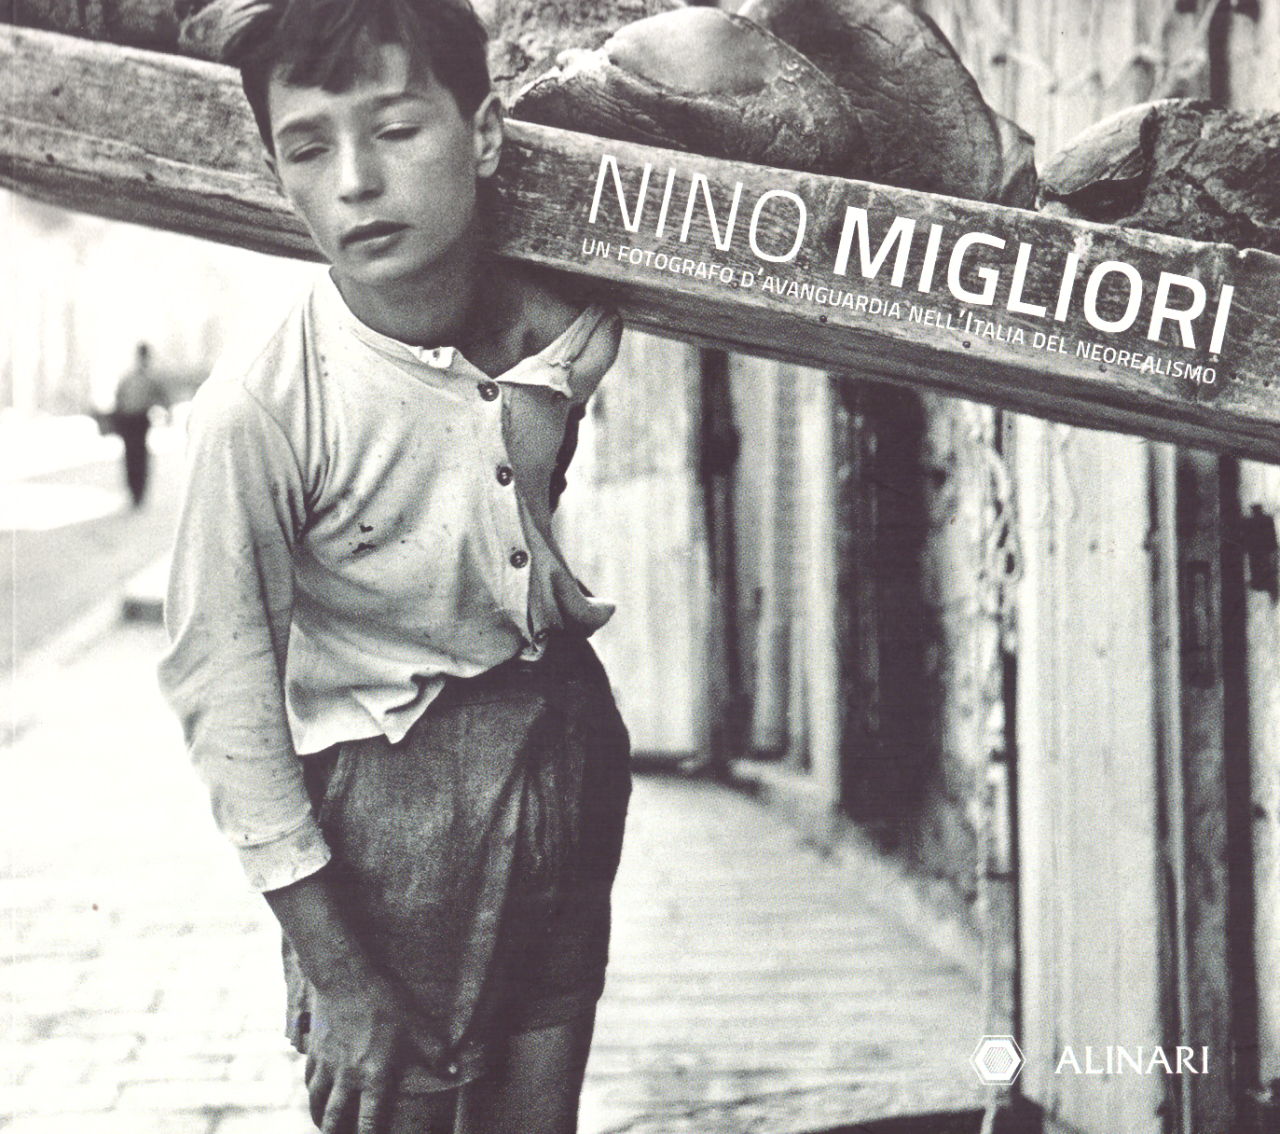 Nino Migliori. Un fotografo d'avanguardia nell'Italia del neorealismo